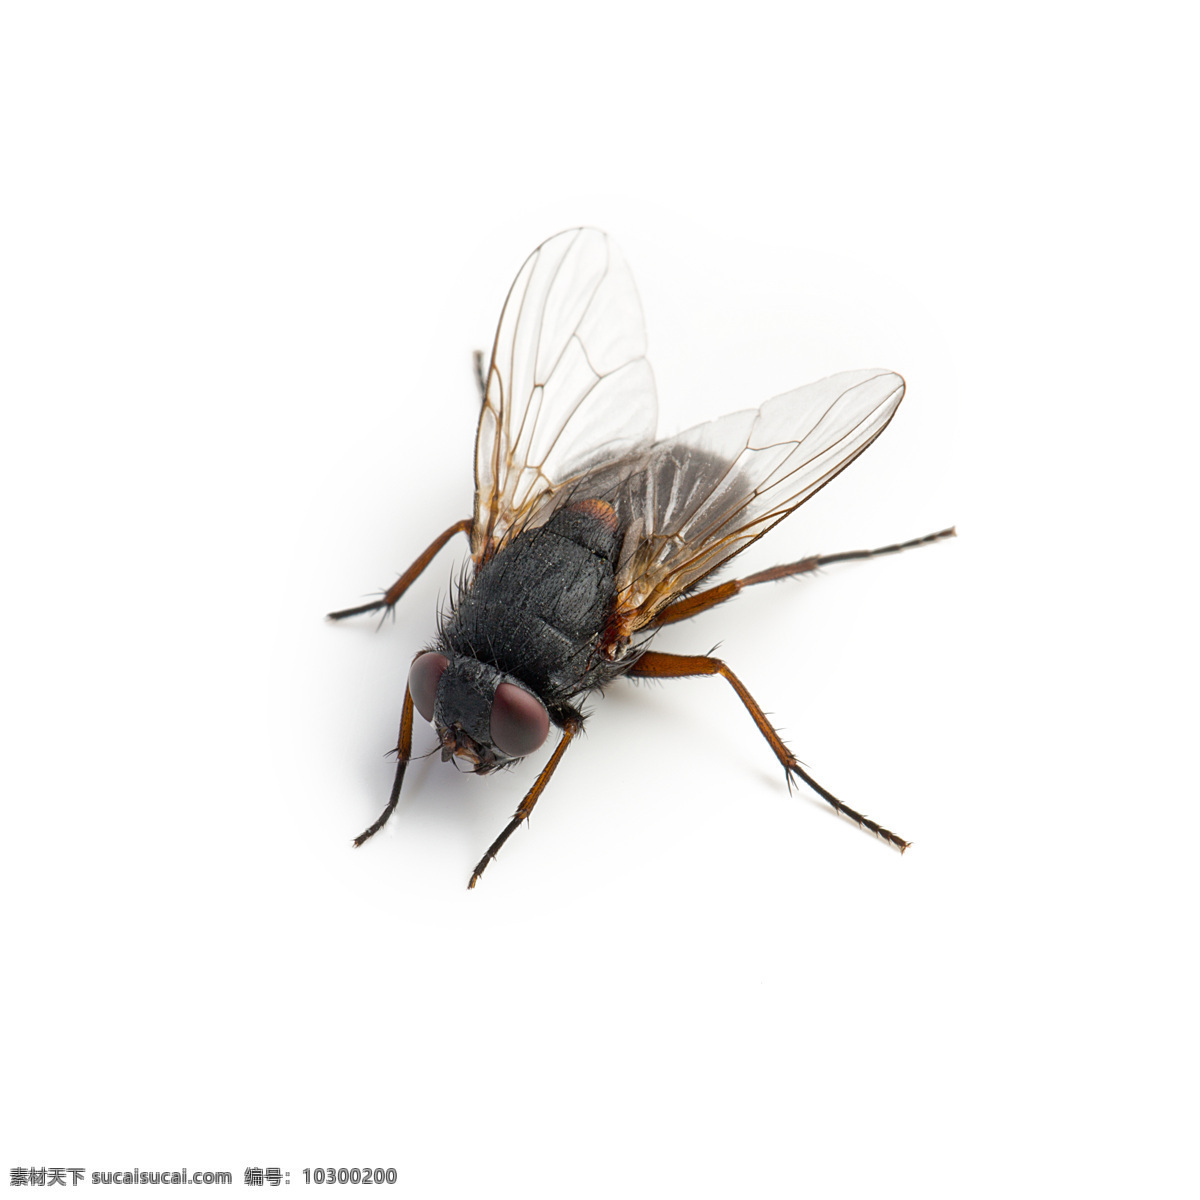 高清 苍蝇 摄影图片 昆虫 苍蝇图片 白纸上的苍蝇 高清苍蝇 生物世界